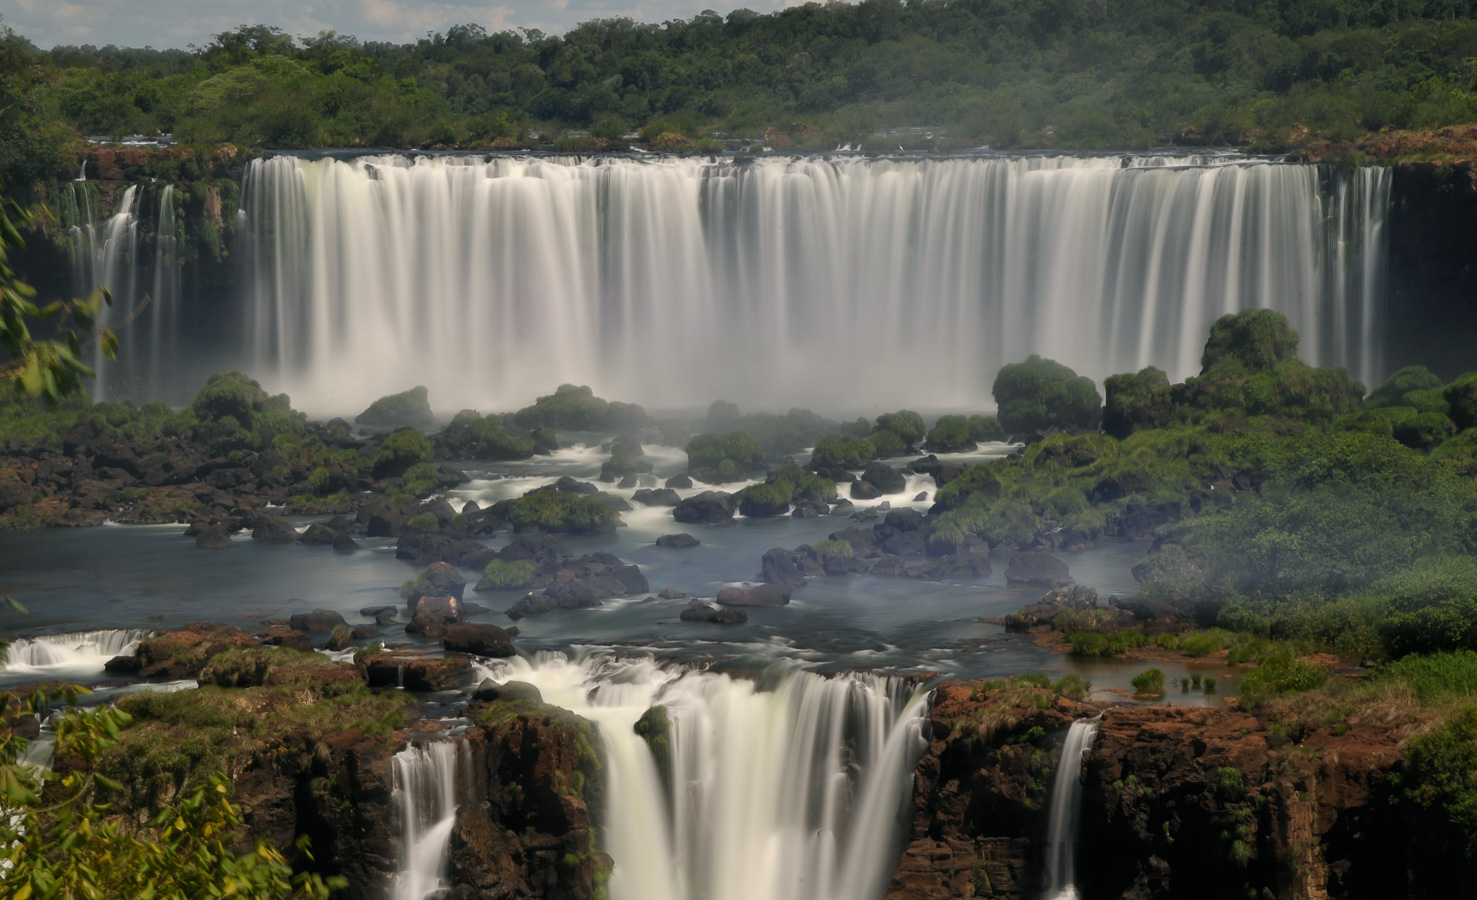 Cataratas del Iguazu [92 mm, 13.0 Sek. bei f / 22, ISO 200]